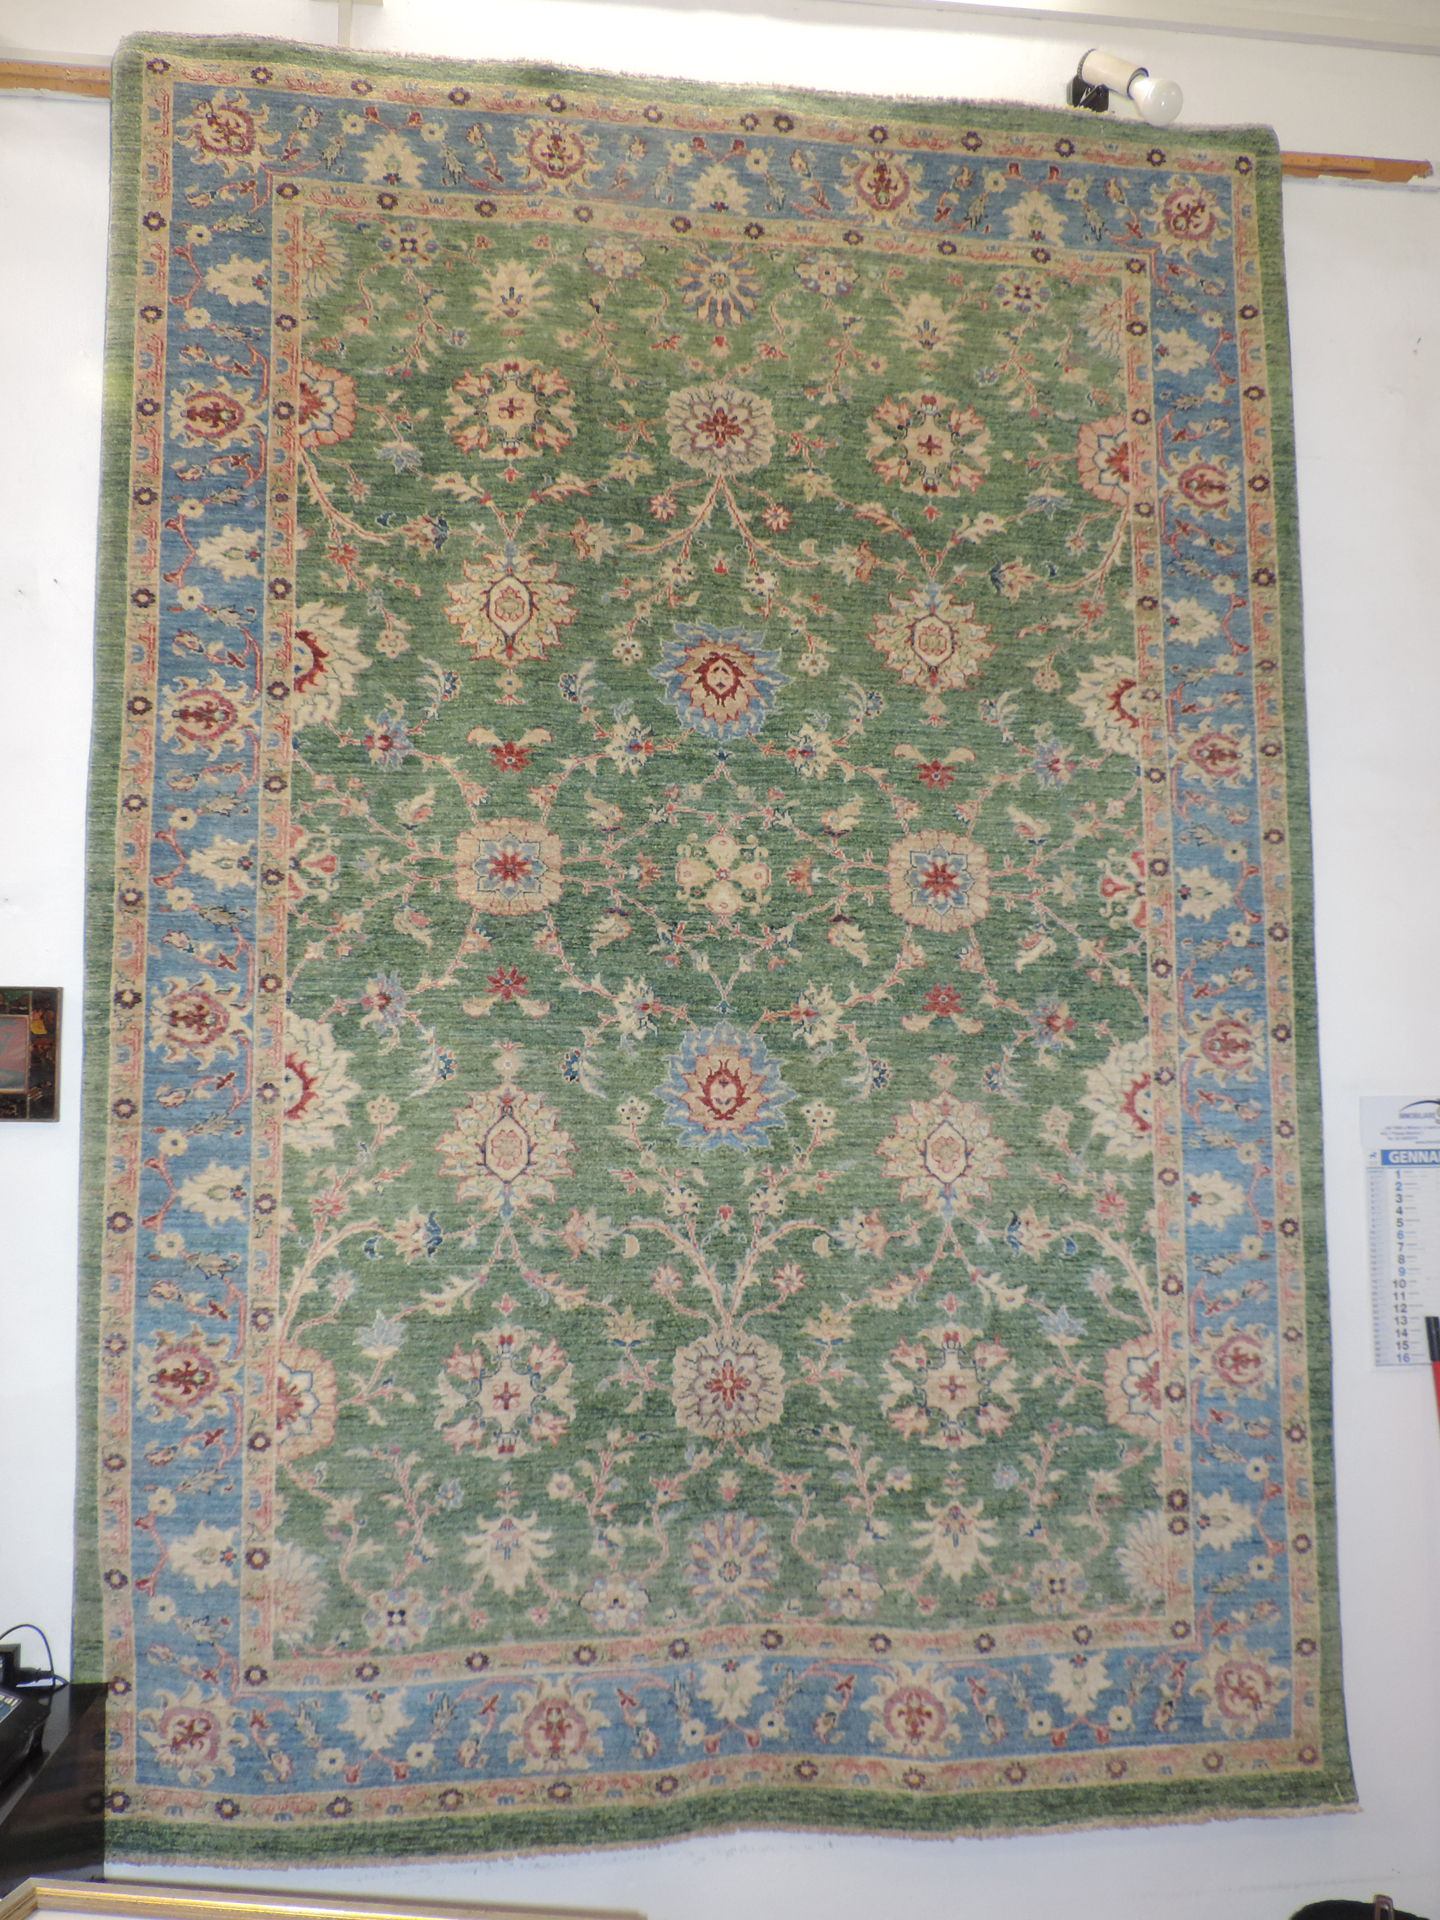 hagibaba-milano-tappeti-persiani-orientali_milanomia2.com_milanomia.com (1)